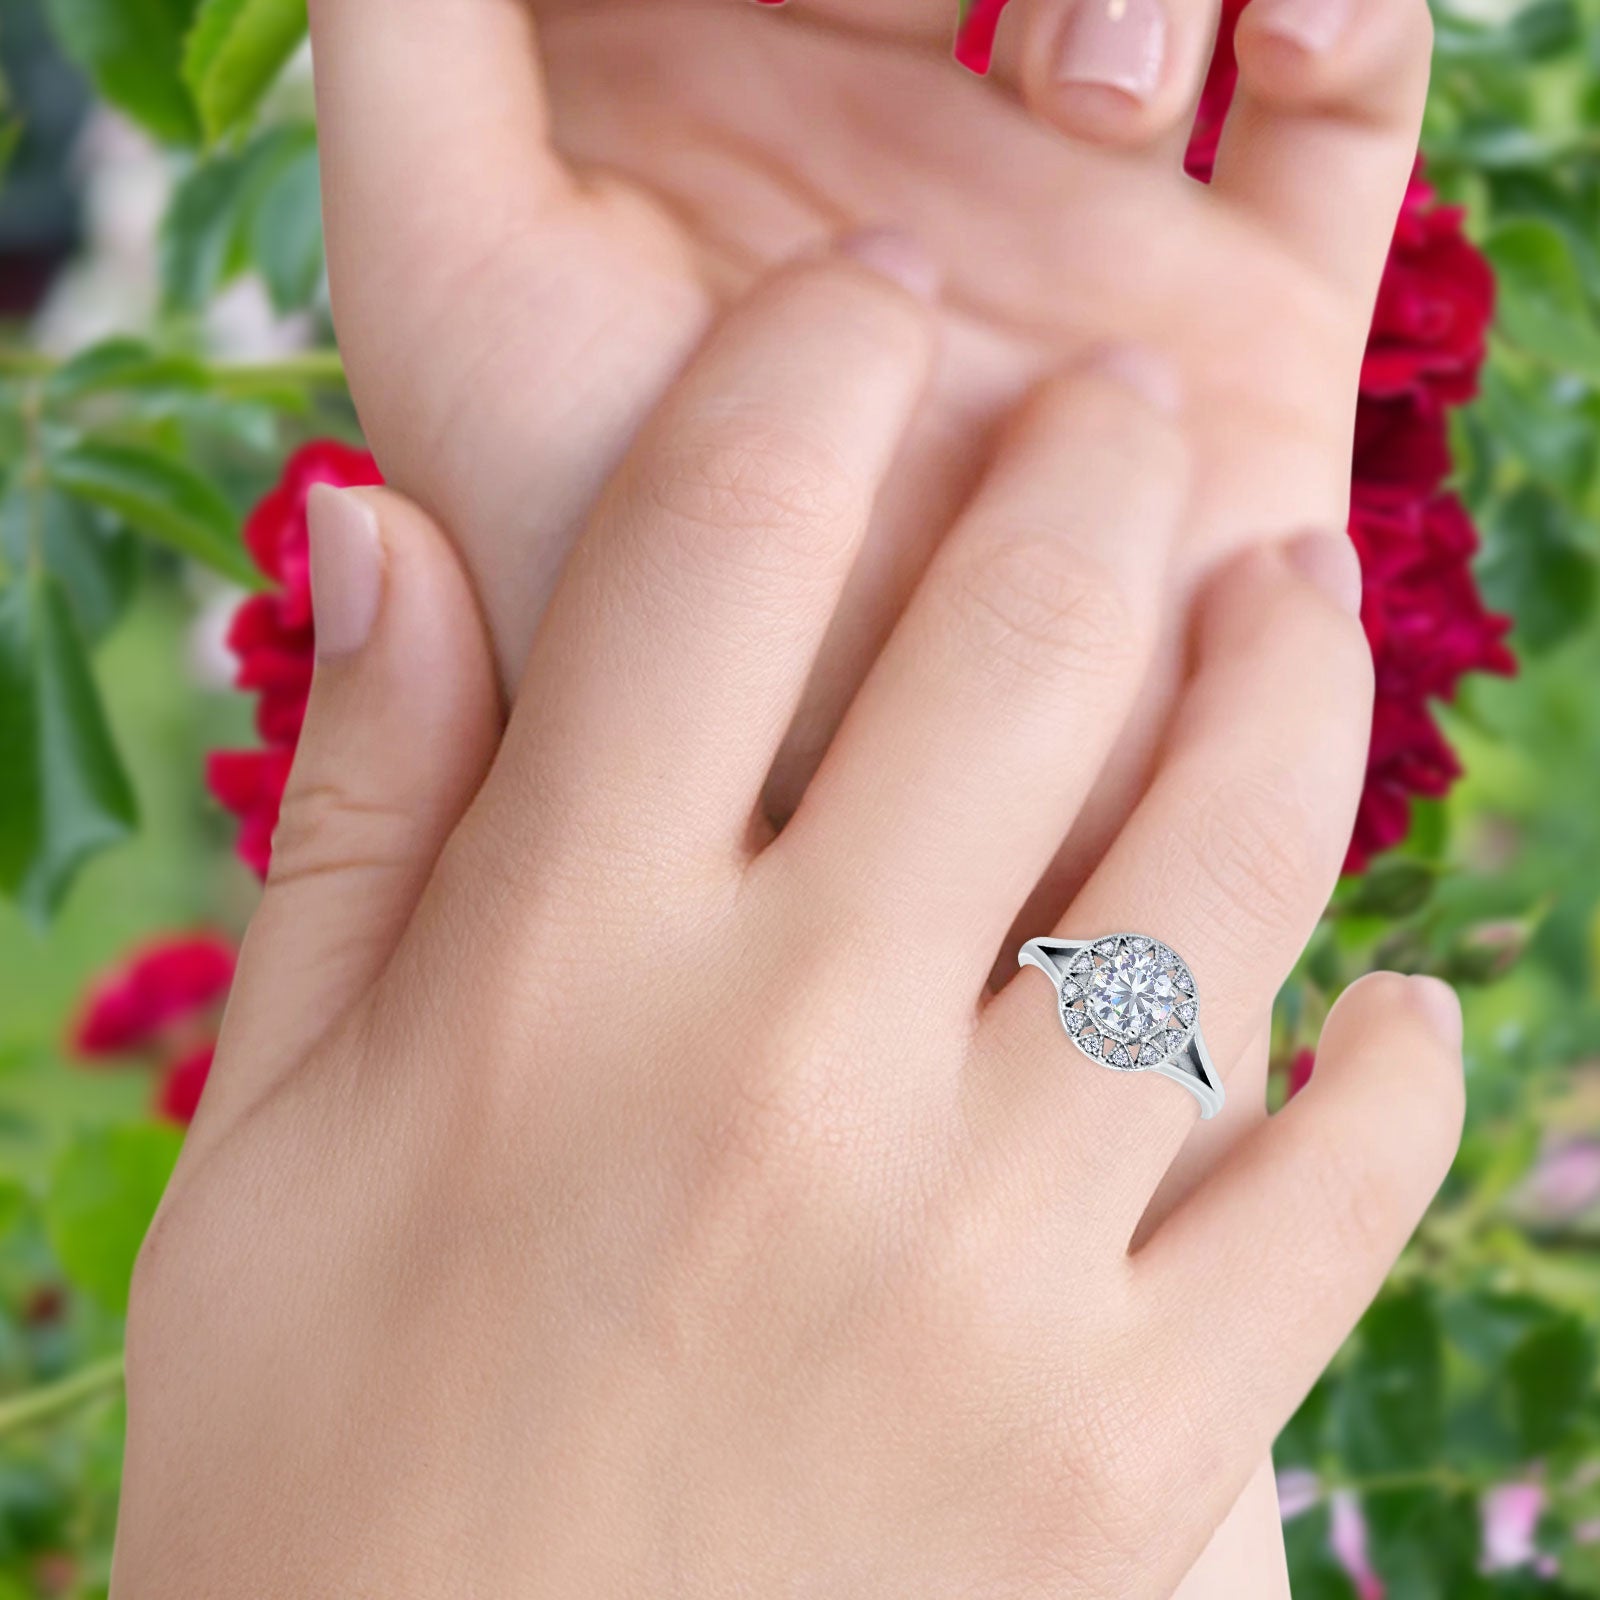 14K Gold Celtic Halo Round Shape Simulated Cubic Zirconia Wedding Engagement Ring